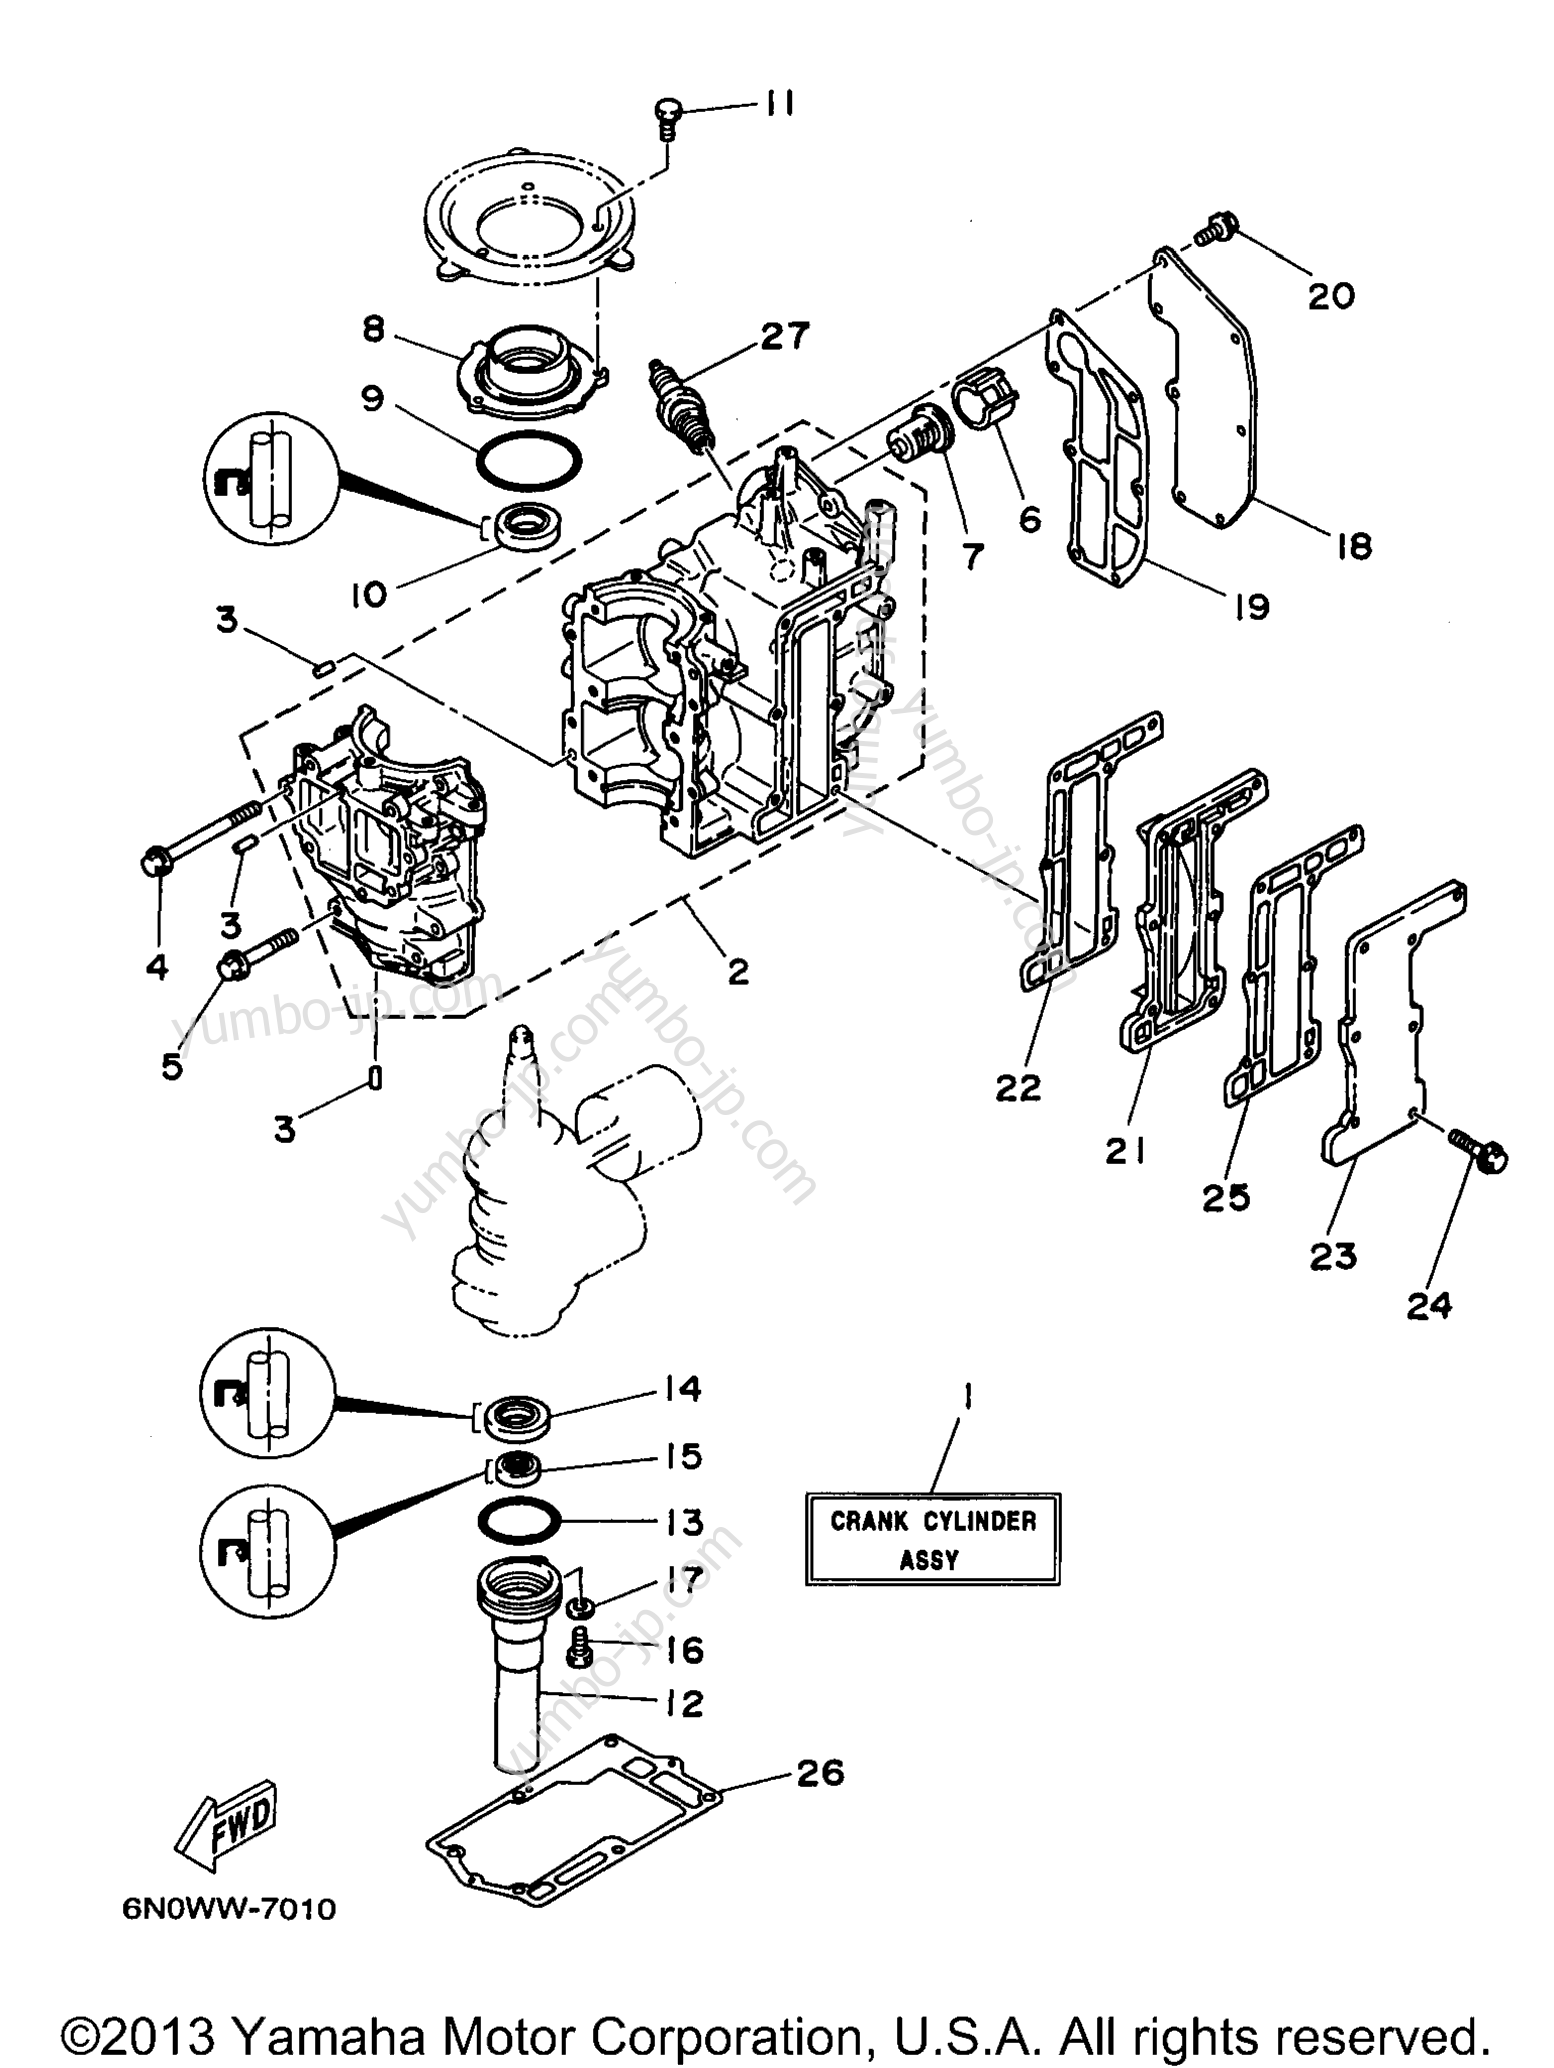 Cylinder Crankcase для лодочных моторов YAMAHA 8MLHX 1999 г.